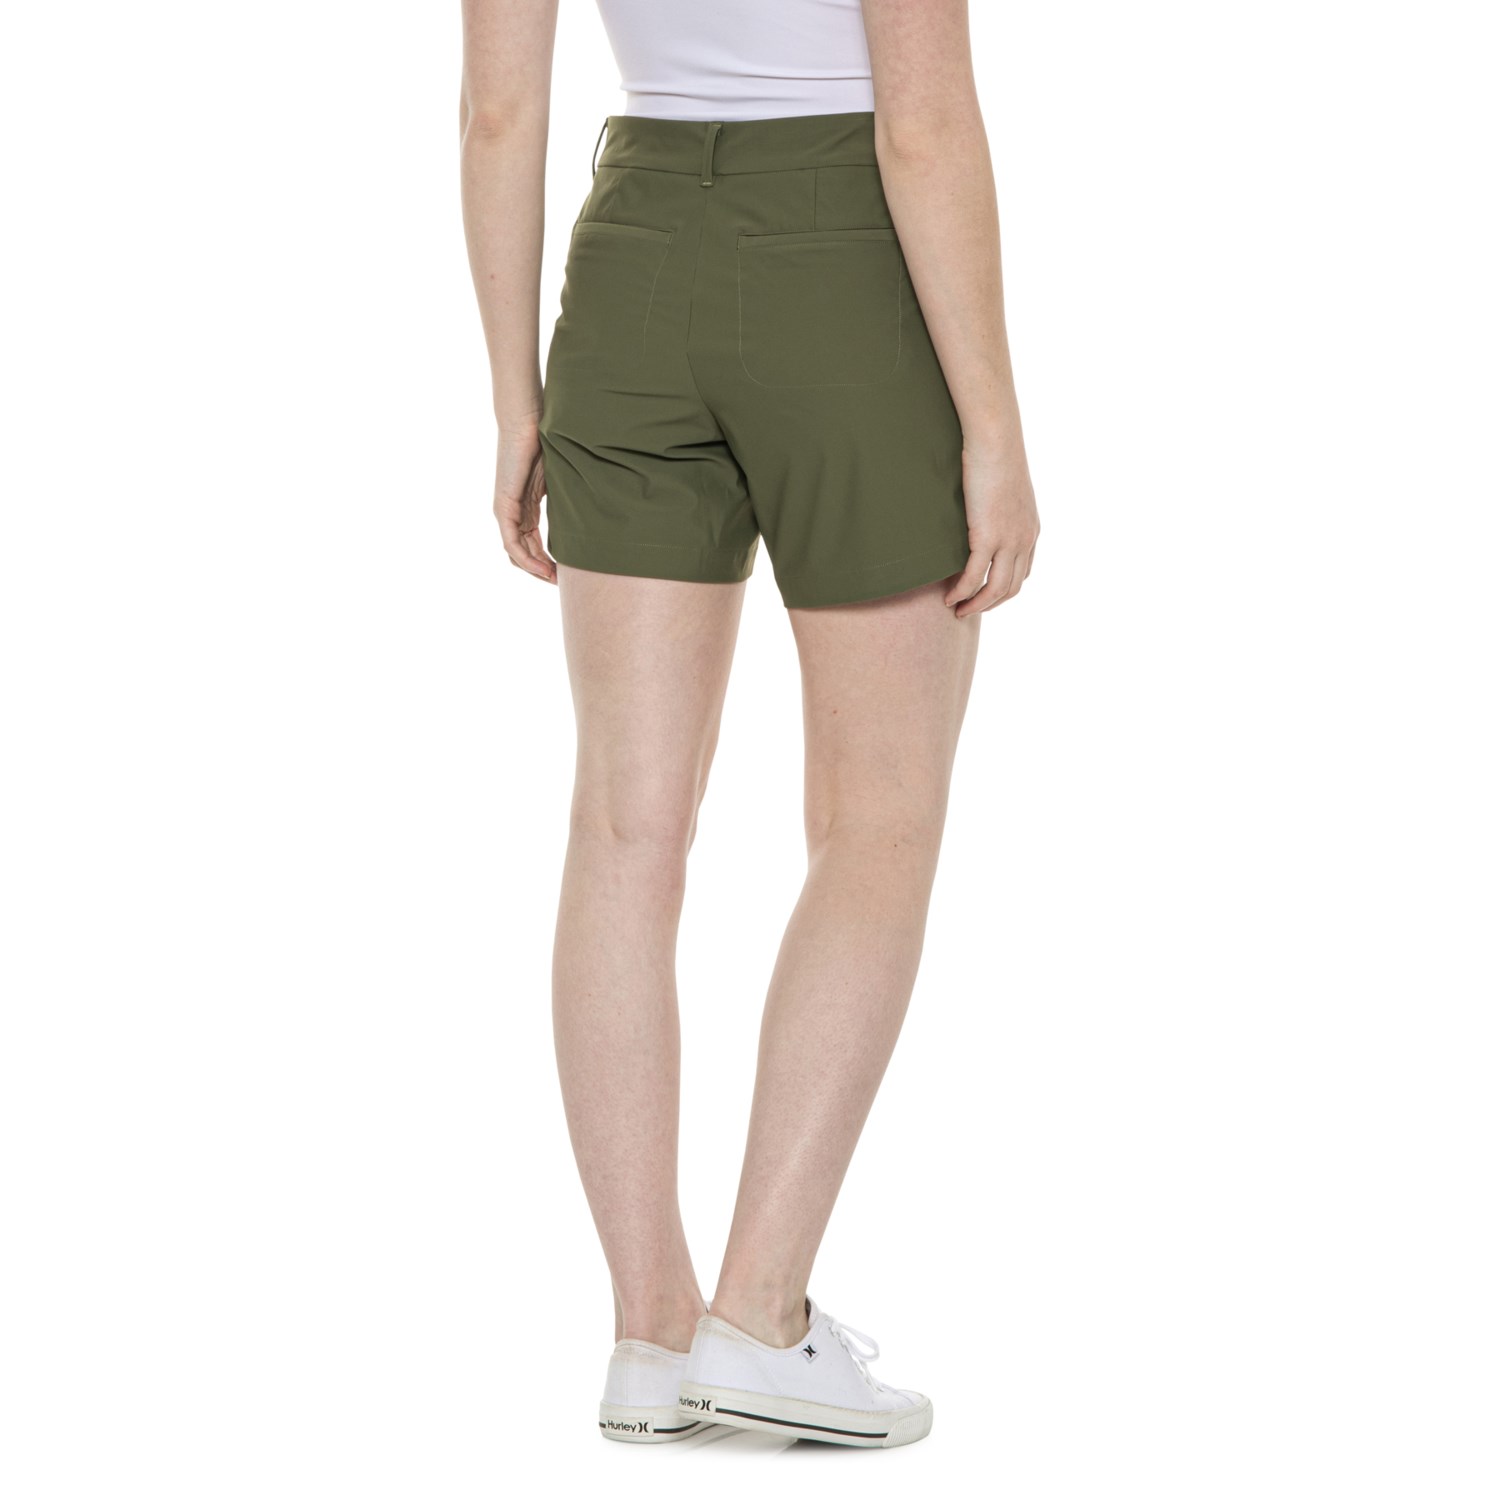 Spanx Sunshine Shorts - 6”, UPF 50+ - Save 30%